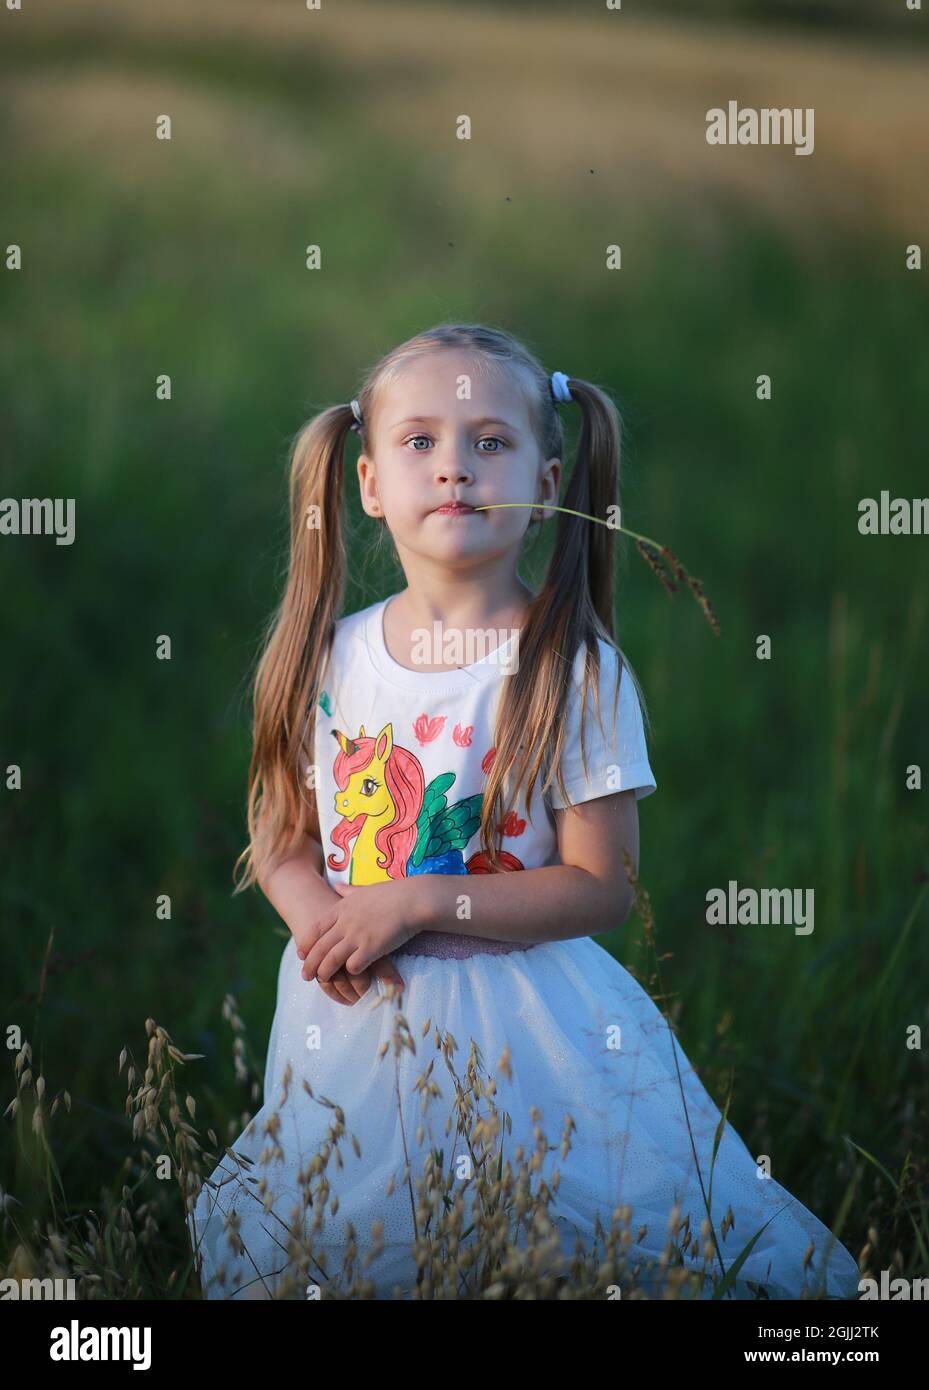 Ein Mädchen mit zwei Schwänzen, das einen Grashalm im Mund hält, in T-Short gekleidet mit einem Einhorn, geht auf einem Feld. Stockfoto